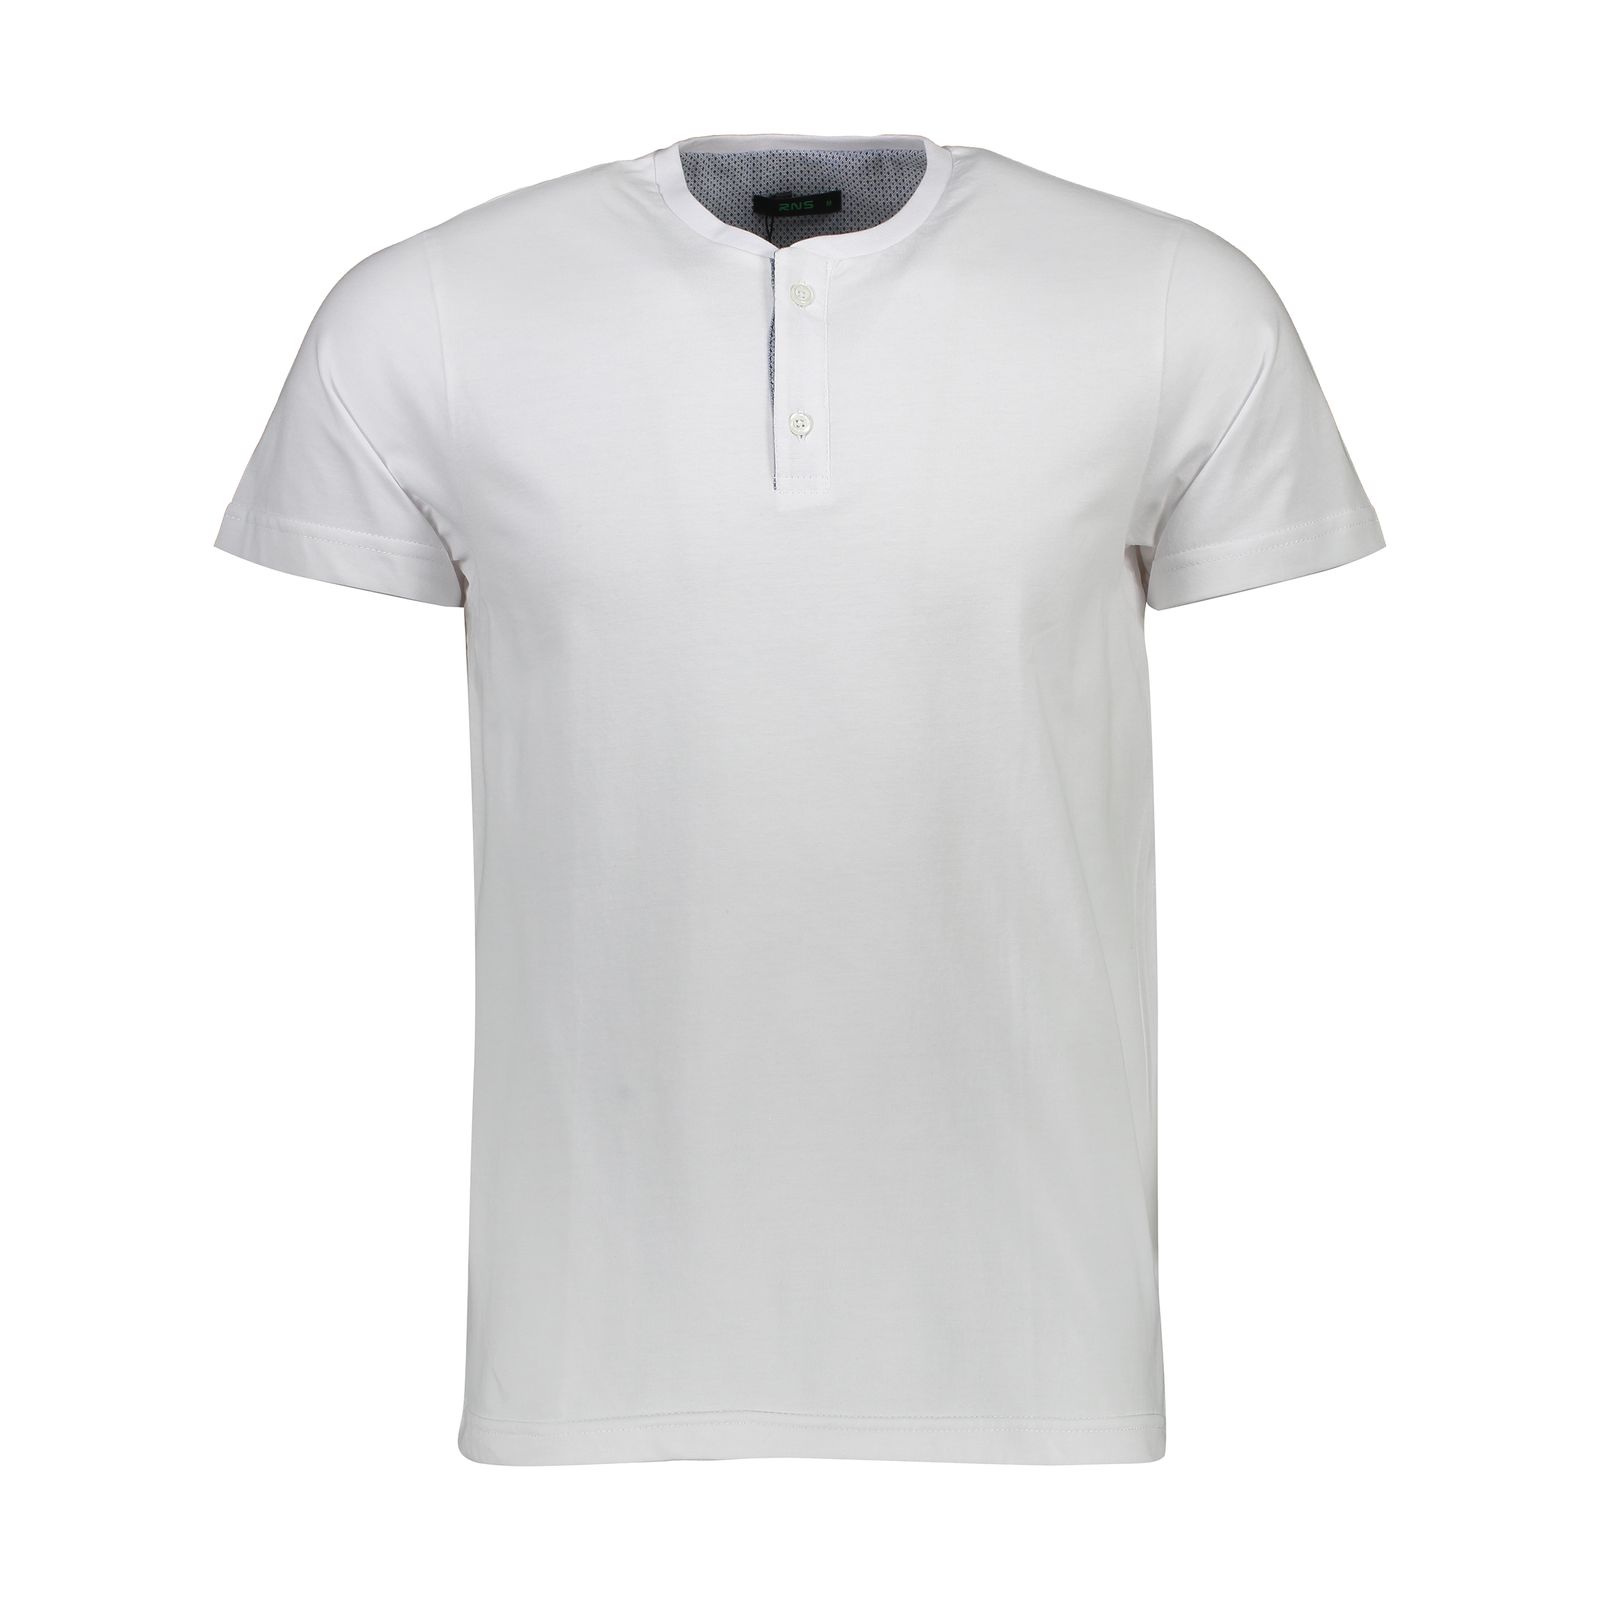 تی شرت مردانه آر ان اس مدل 1131117-01 - سفید - 1